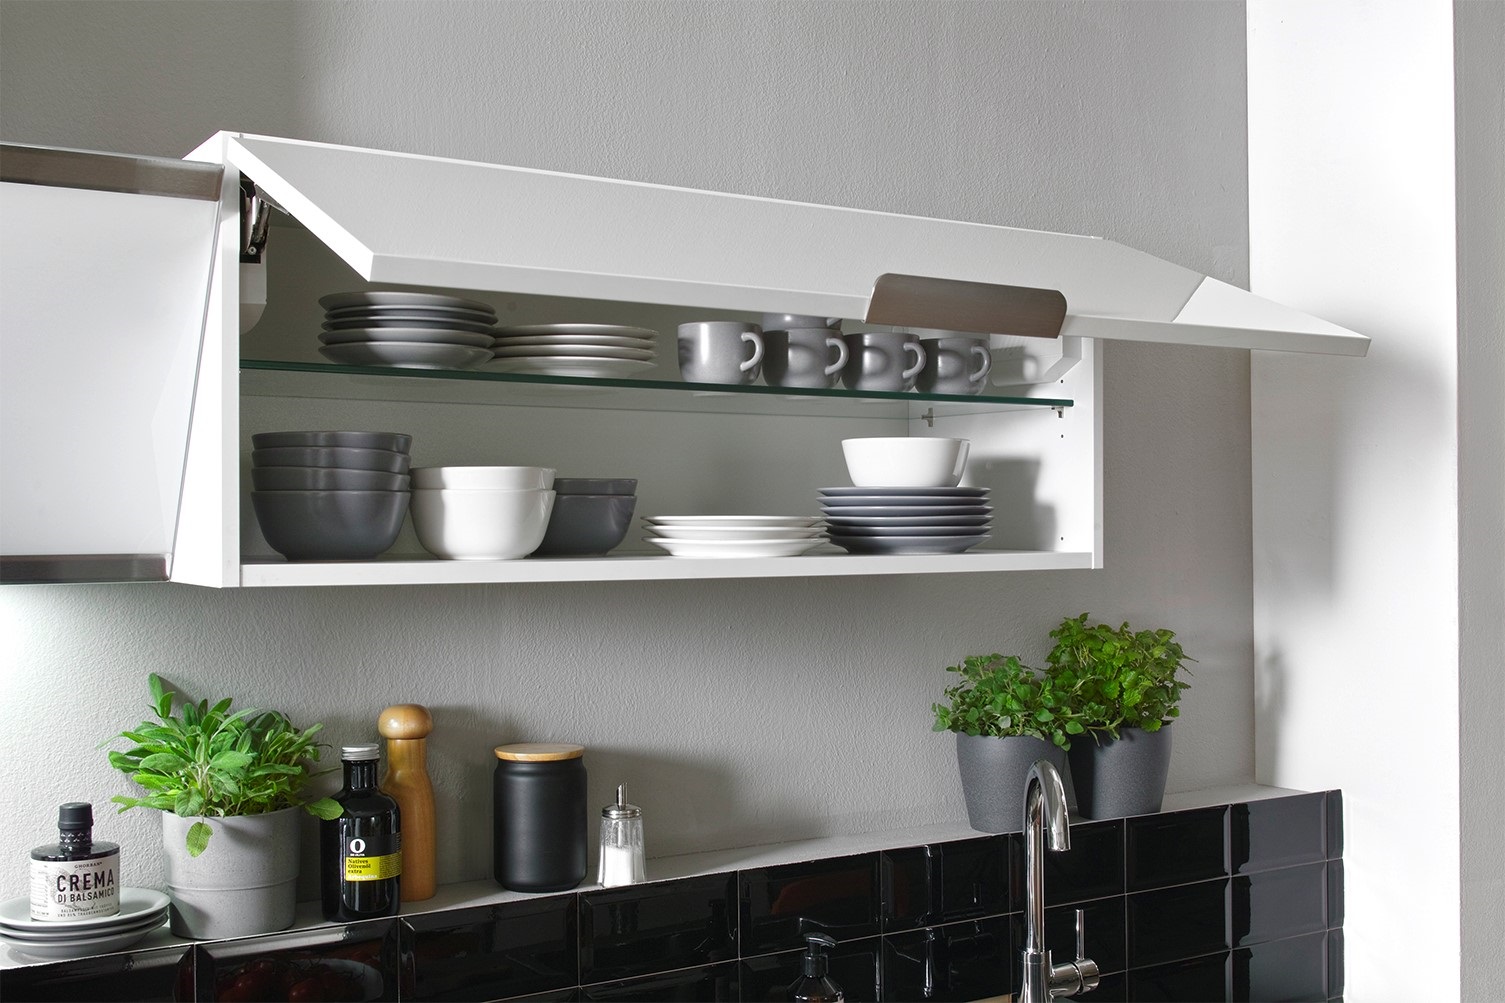 Küche vormontierte L - Küche 250 x 175 cm wechselseitig aufbaubar incl. Geräte Respekta Selection Elisabeth Artisan  Weiß